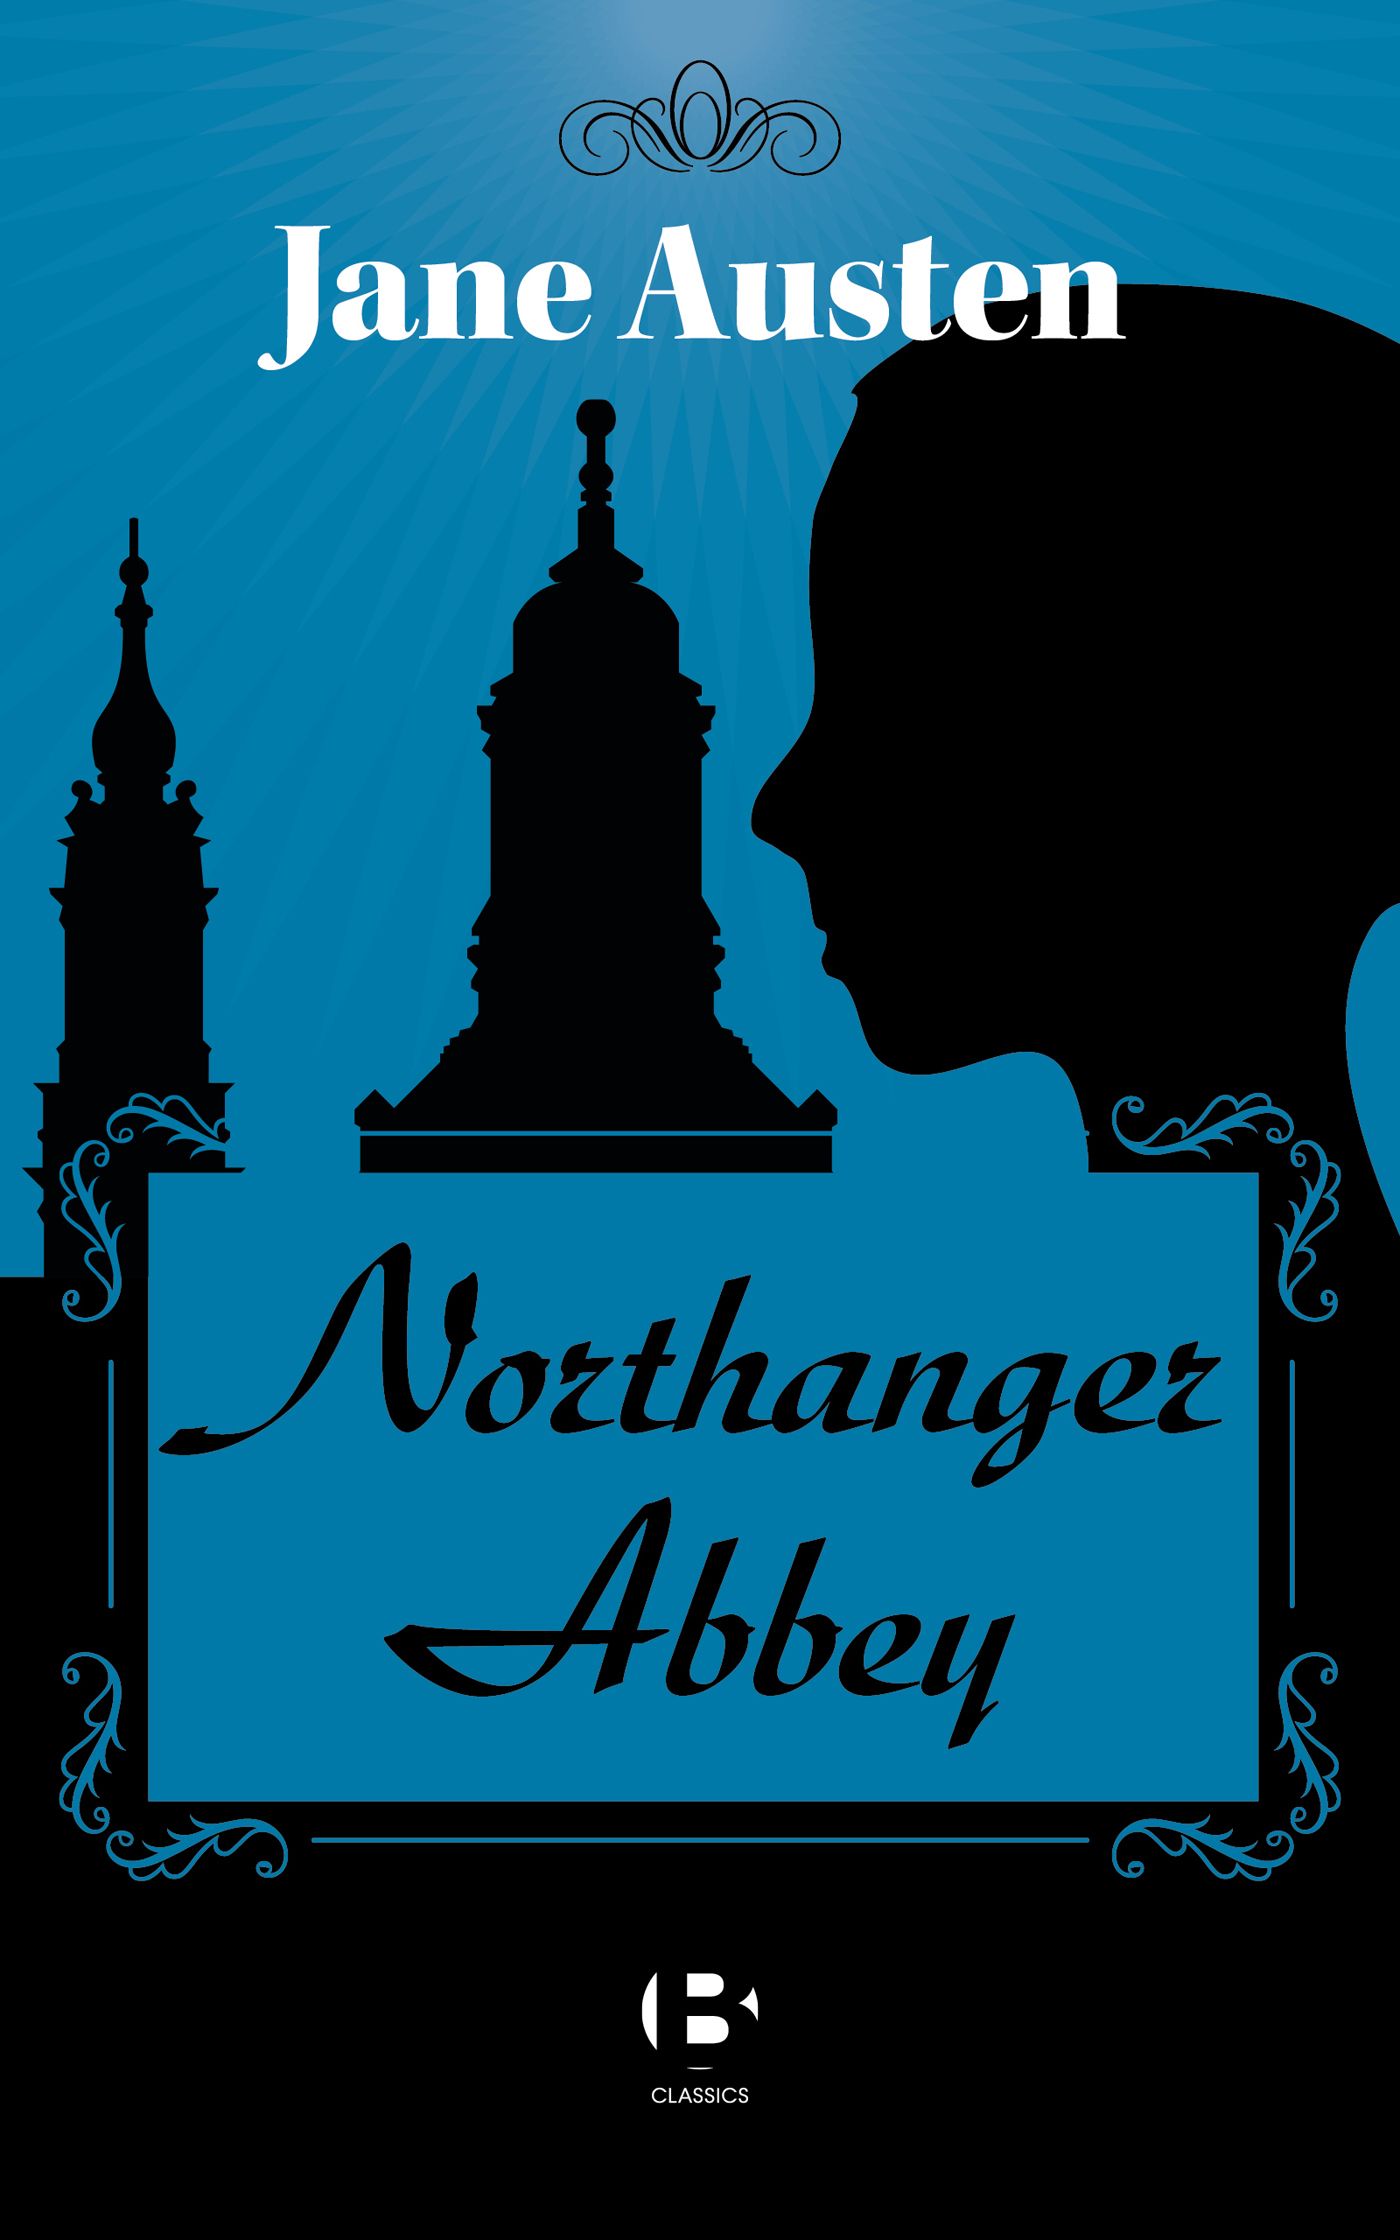 Northanger Abbey, eBook by Jane Austen